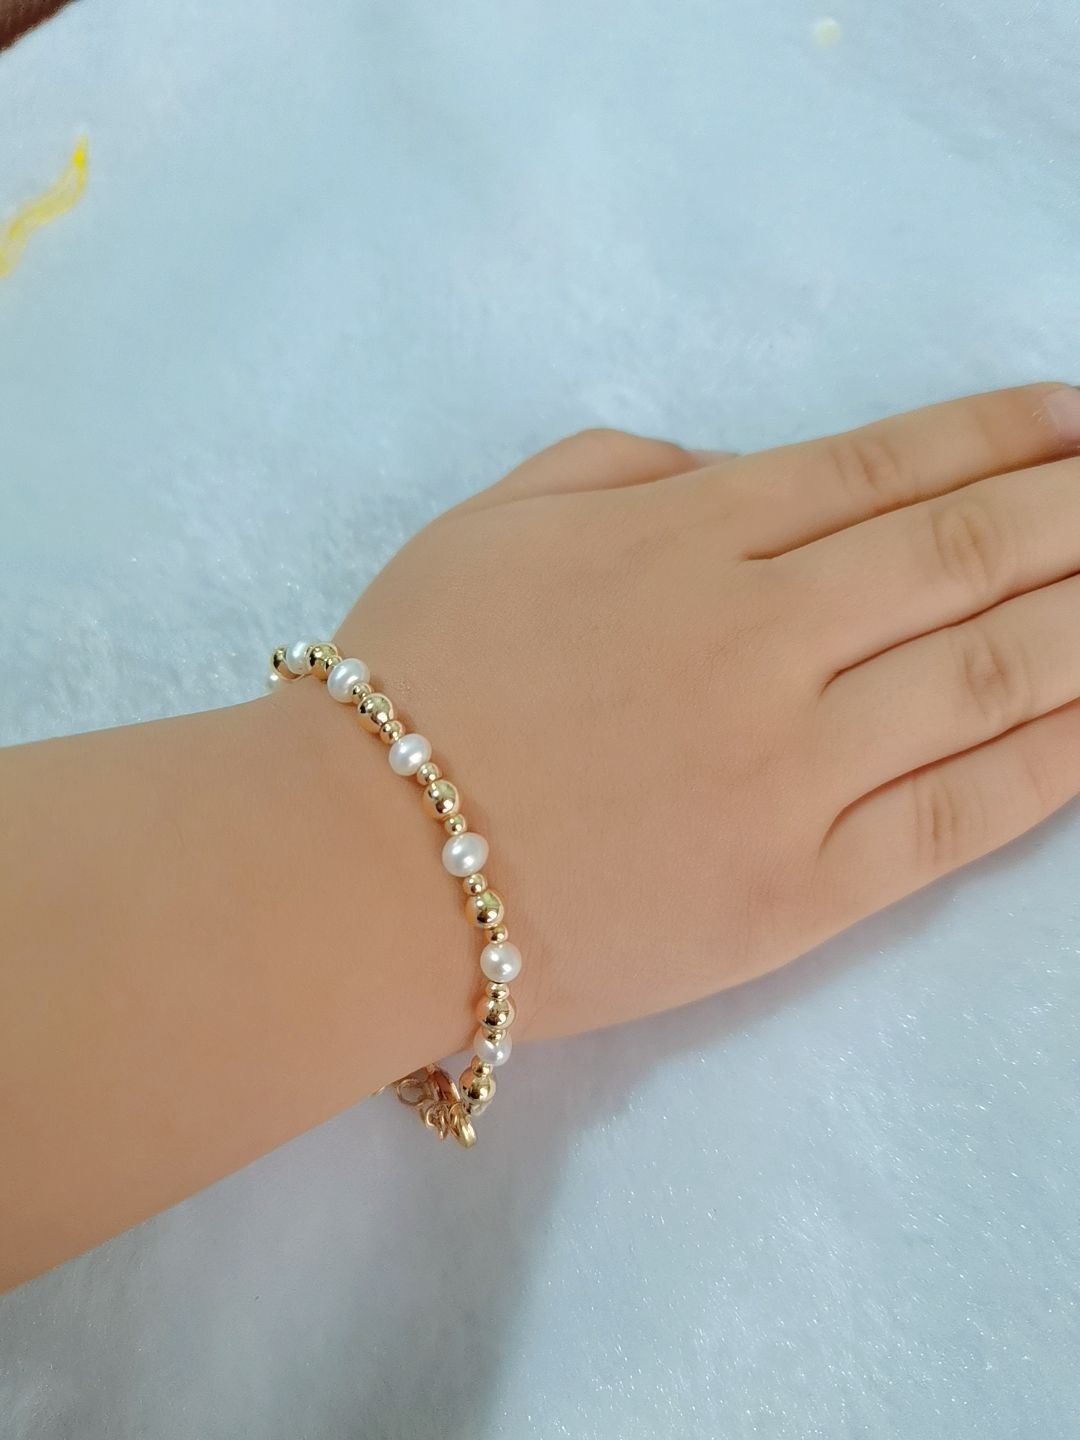 Children's Bracelets:  18k Gold Filled, Freshwater Pearl Bracelets 15cm + Extension. Age 6 - 12+